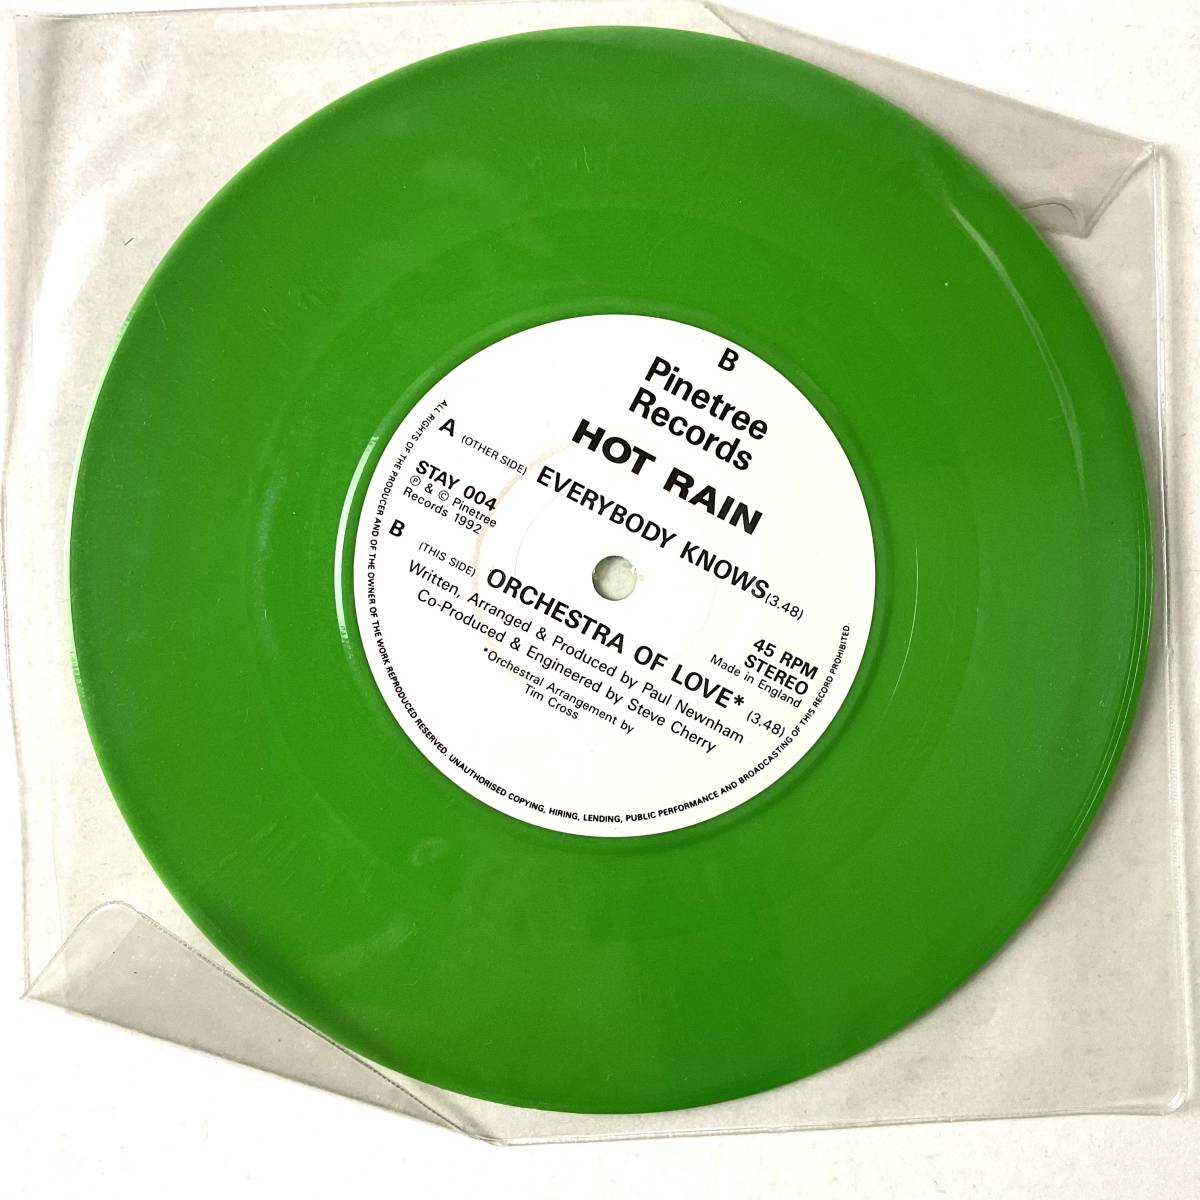 激レア デッドストック新品 未使用盤 HOT RAIN Everybody Knows レコード 7“ PNIETREE RECORDS 1992 UNPLAYED ネオアコ ギターポップ_画像2